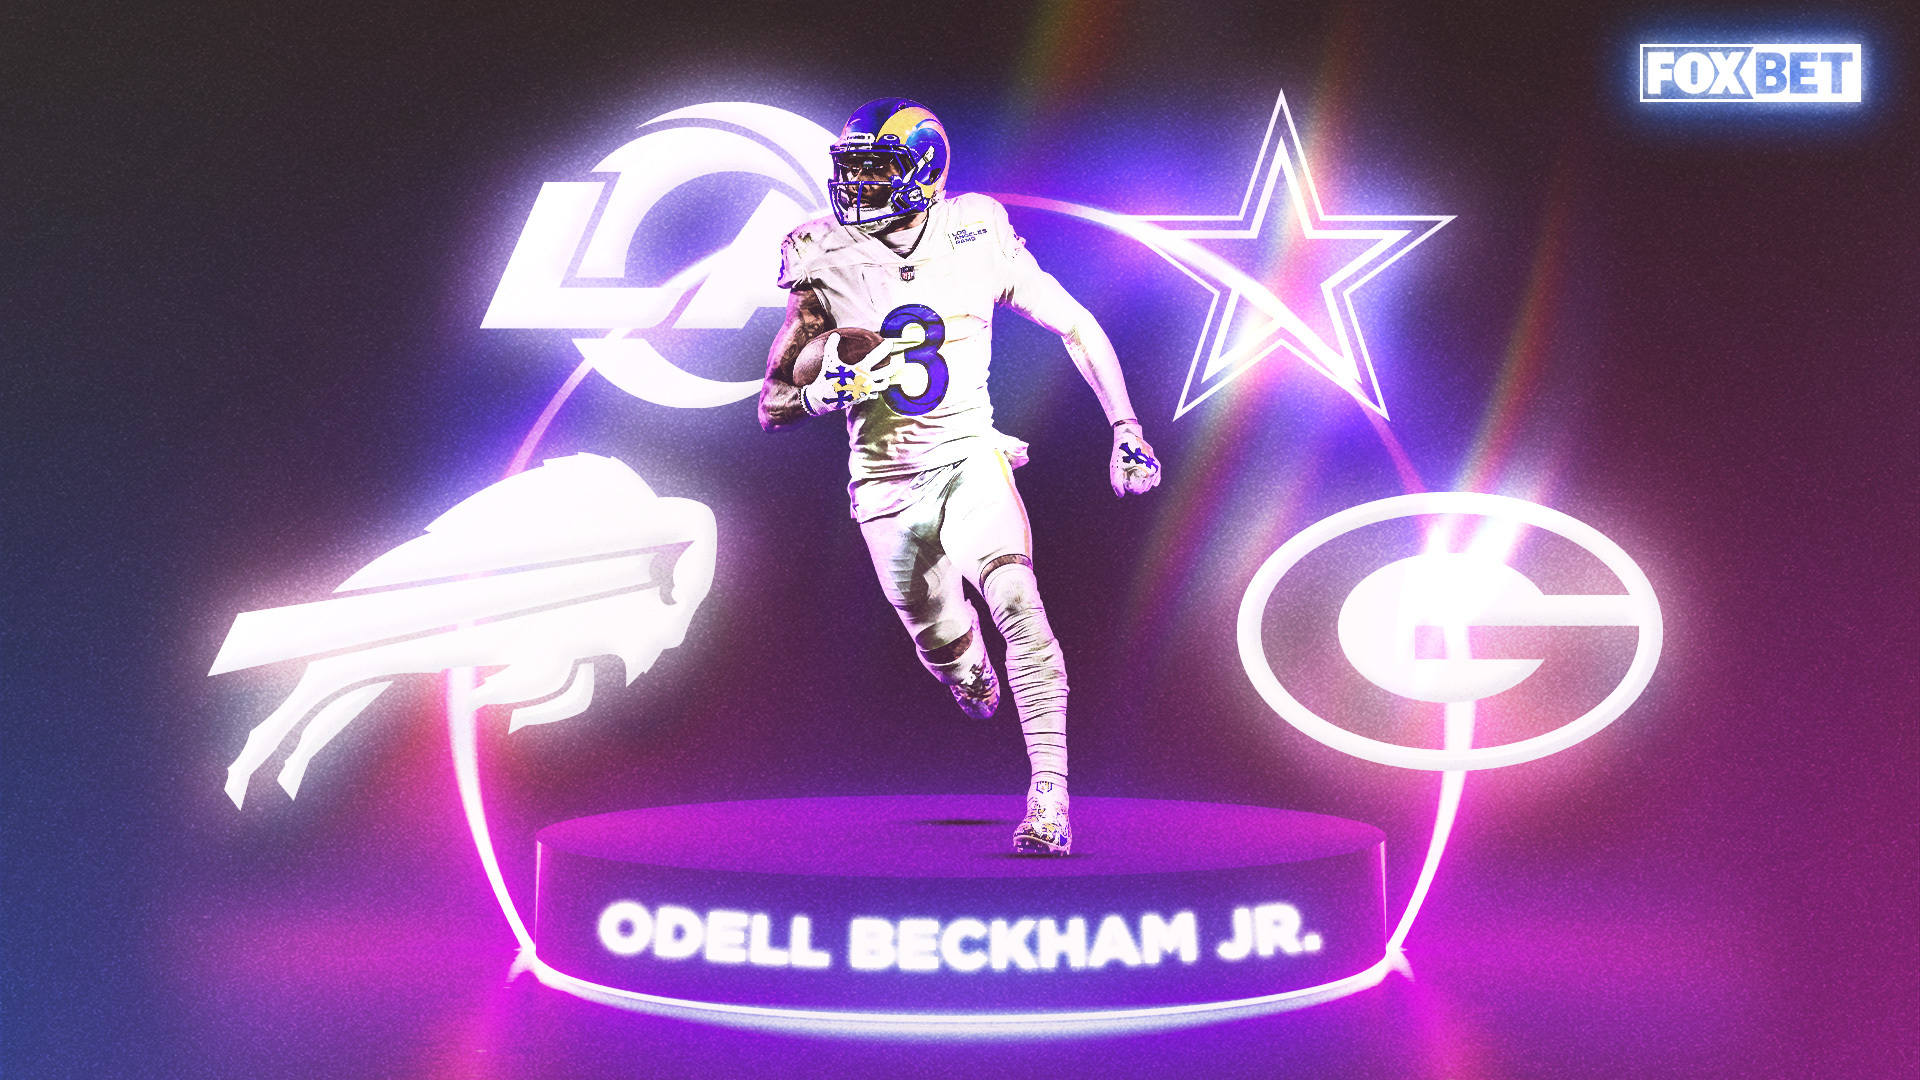 NFL Odds: Lines on Odell Beckham Jr.'s next team led by Cowboys, Bills